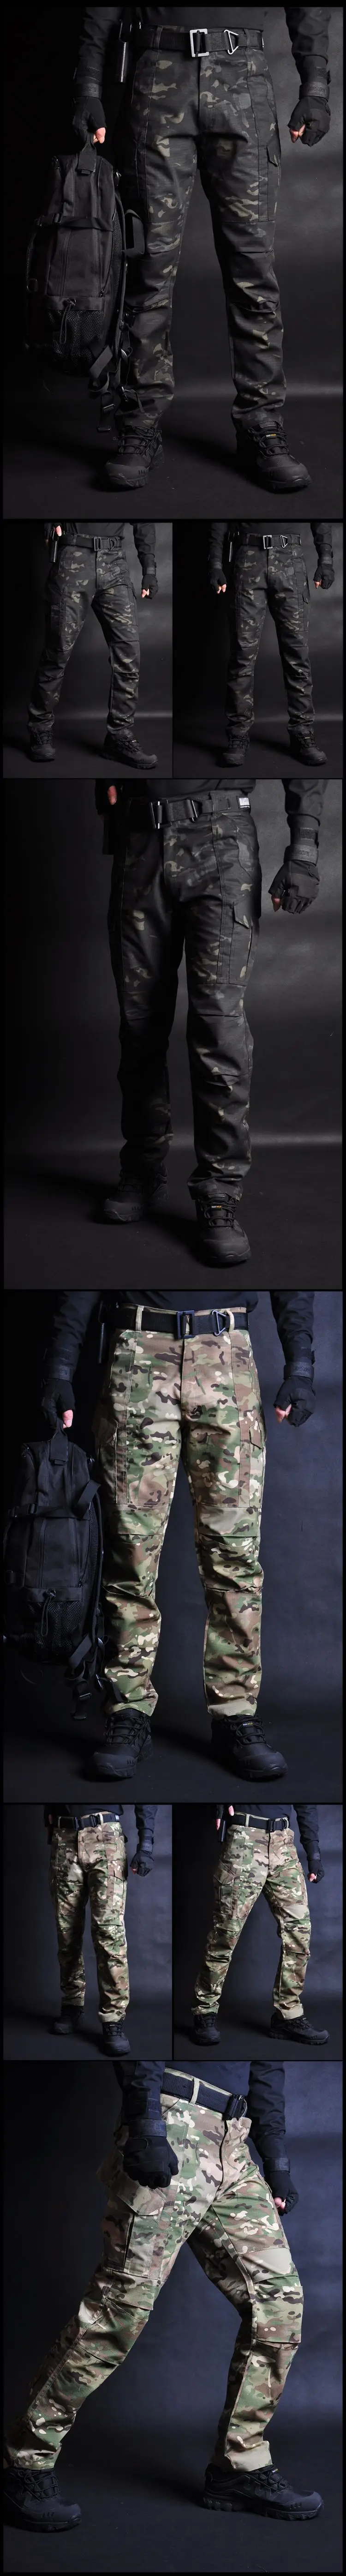 Камуфляжные тактические боевые костюмы Военная тренировочная форма рубашка+ штаны походная стрельба, битва охотничья одежда